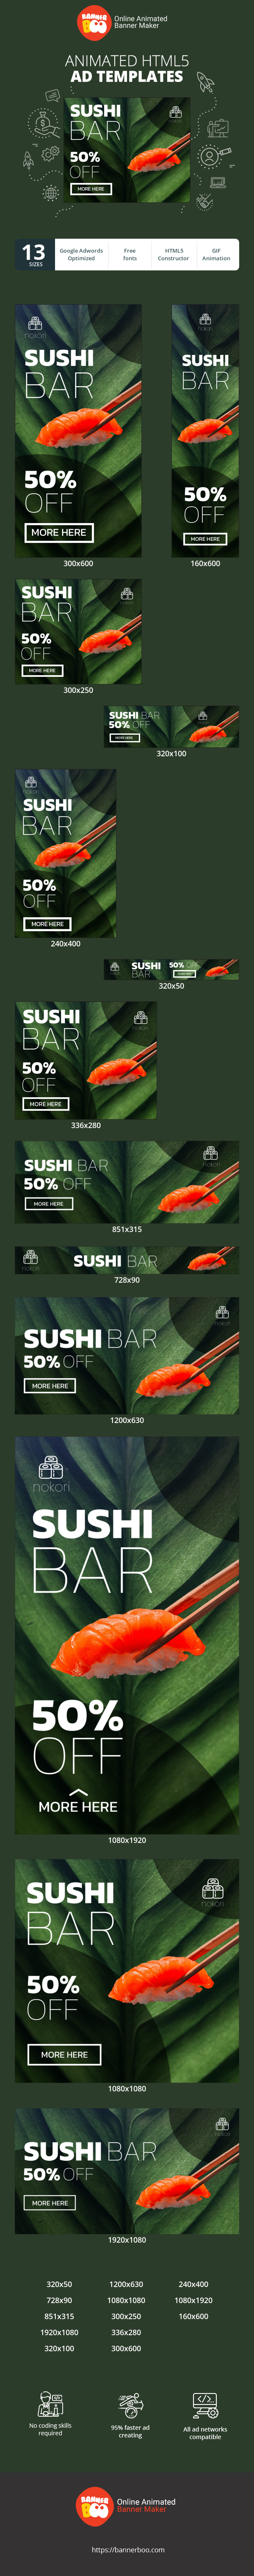 Шаблон рекламного банера — Sushi Bar — 50% Off